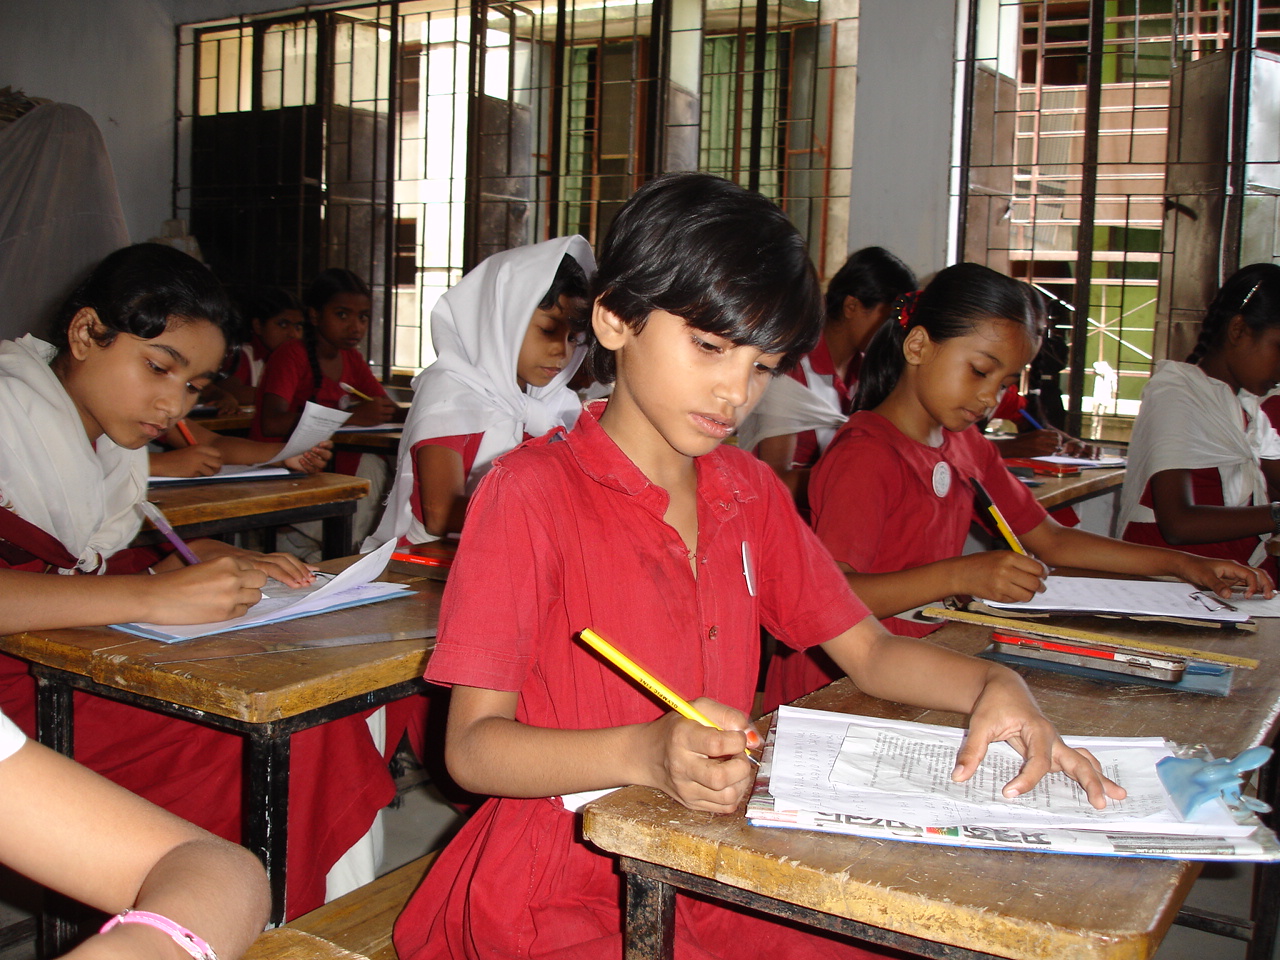 بنغلادش تقليص دوام المدارس بسبب نقص الكهرباء